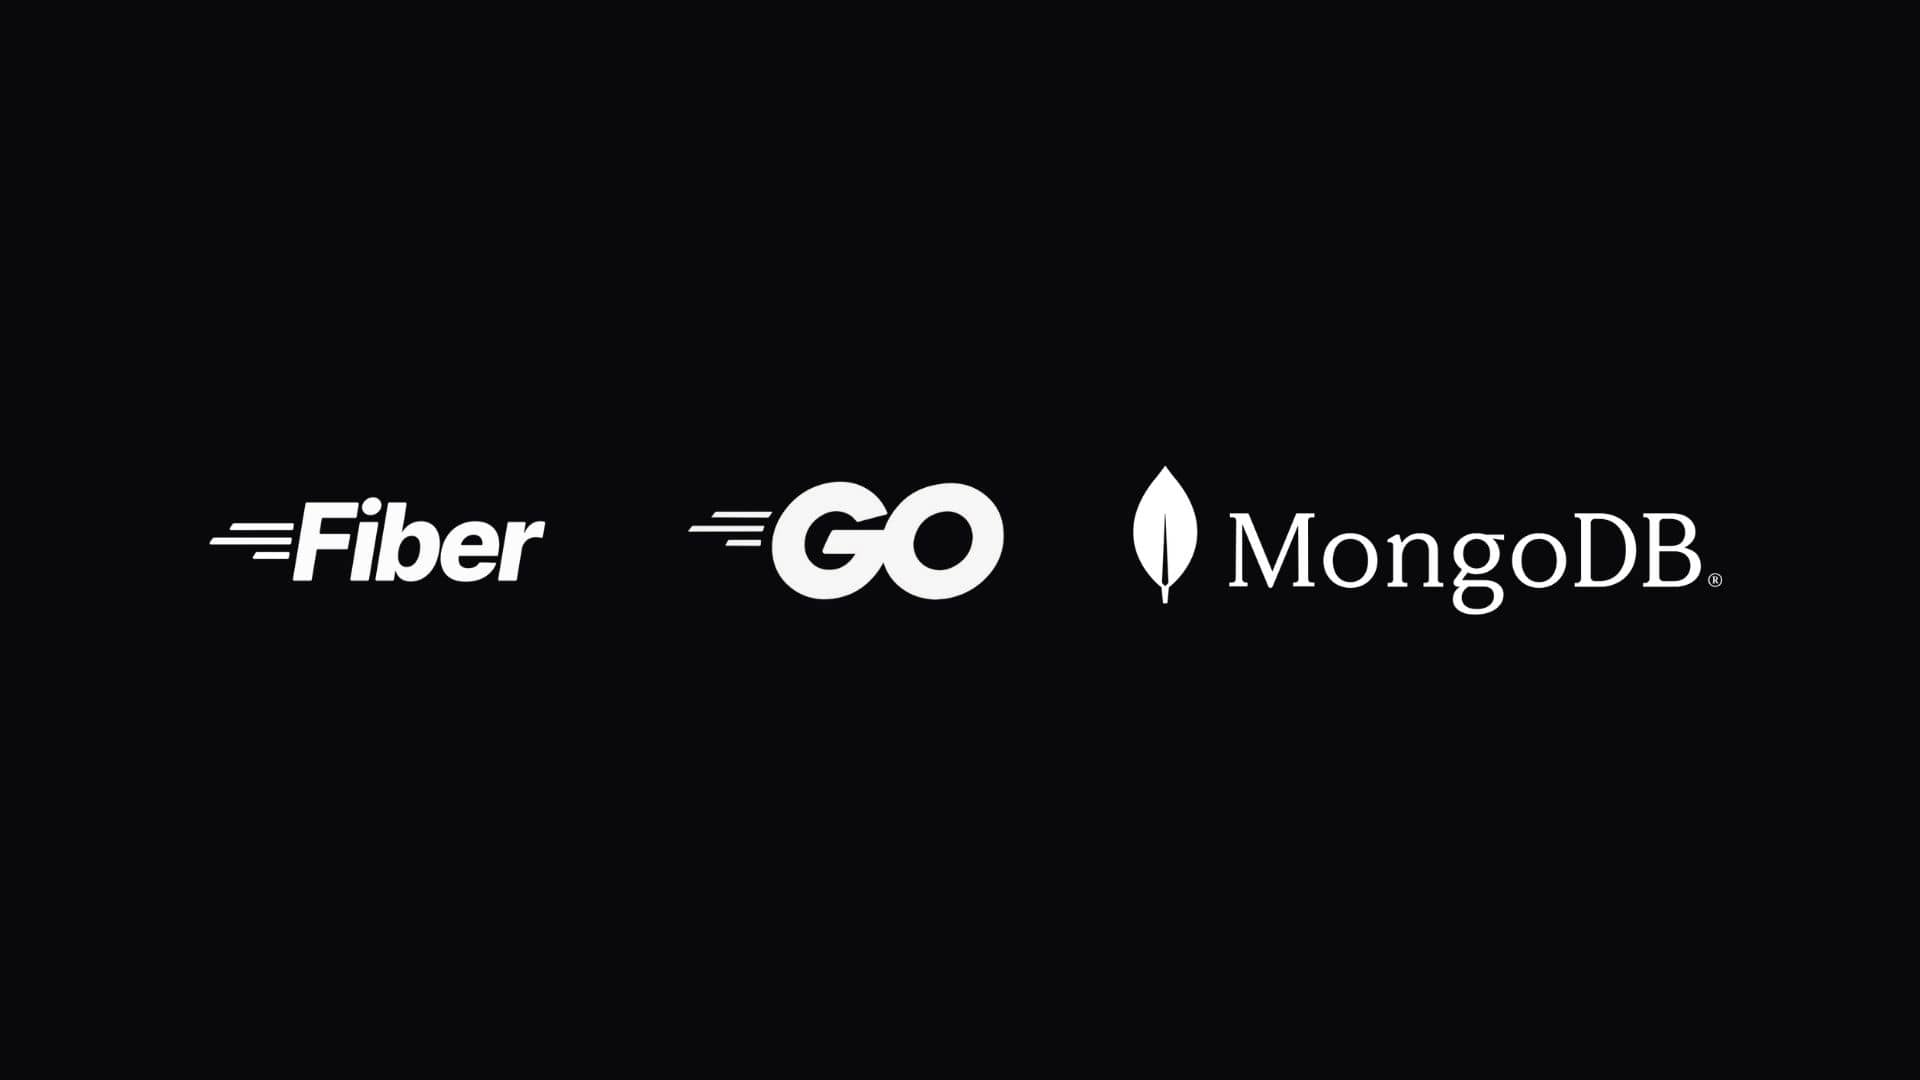 Golang logo, Fiber logo and MongoDB logo